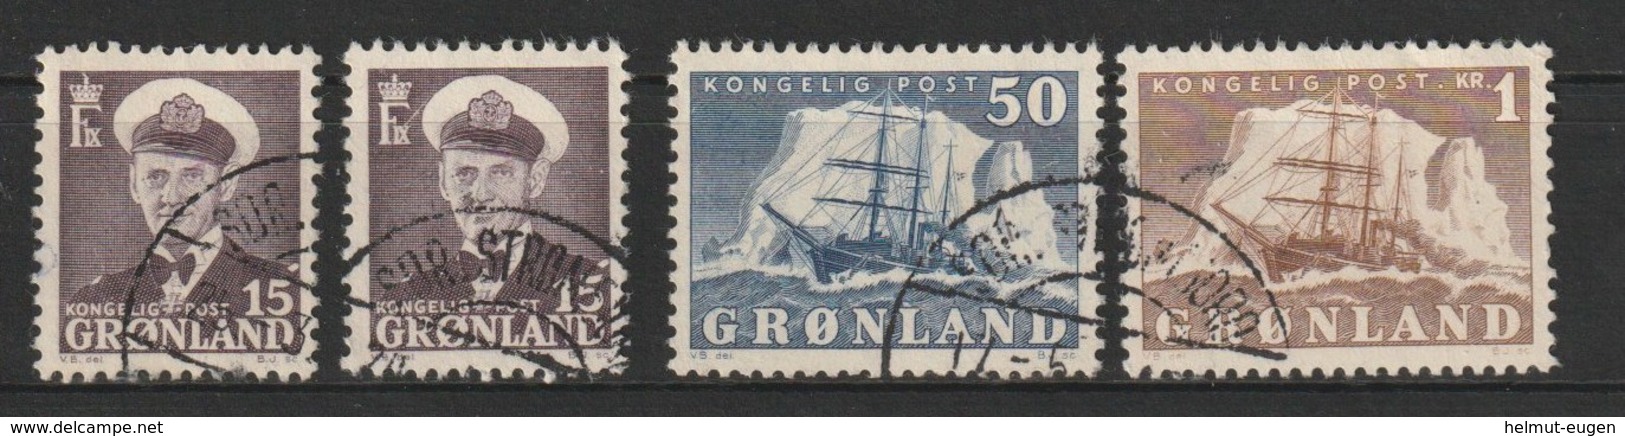 MiNr. 31. 31, 34, 35 Dänemark Grönland       1950, 15. Aug./1960. Freimarken: König Frederik IX. Und Arktisschiff. - Usados